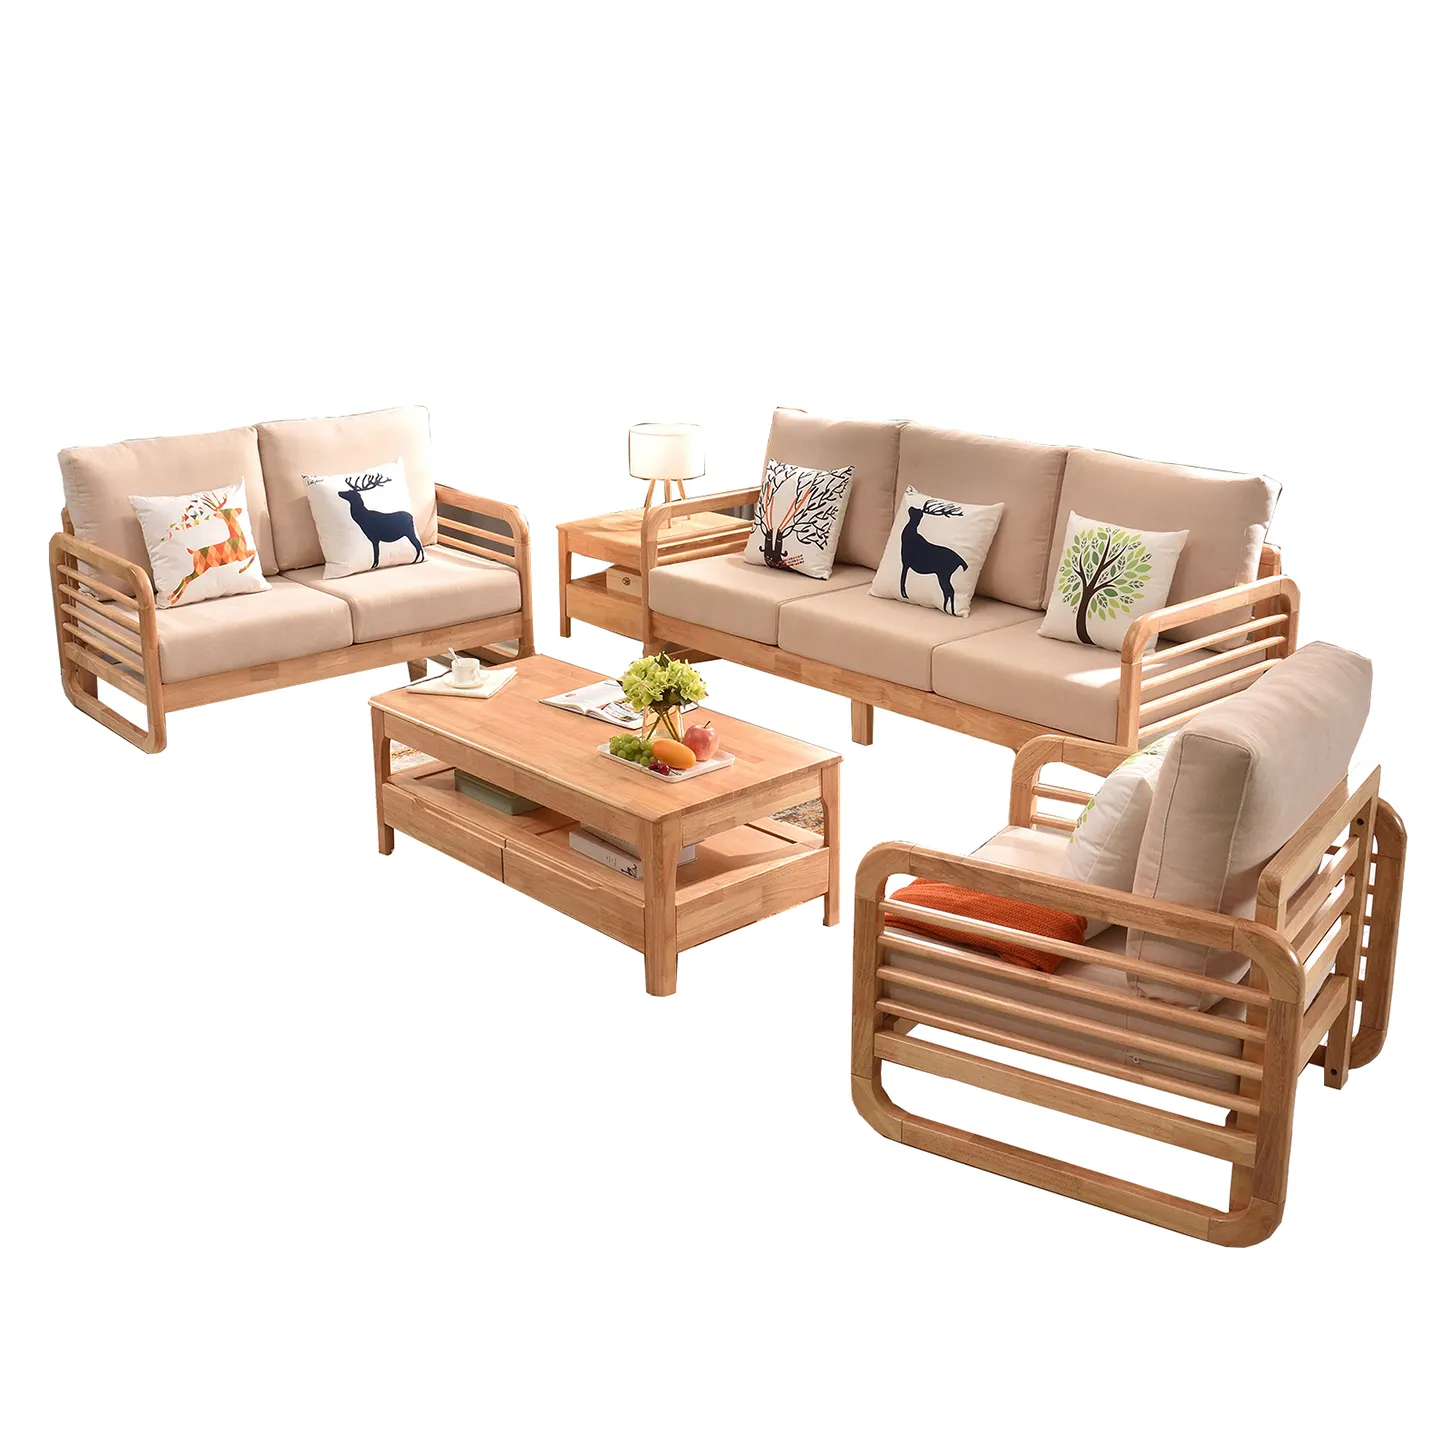 מפעל מחיר מוכר OEM 6 מושבים מוצק עץ בית ריהוט ספה מרופדת סטים לסלון OEM ODM שירות הניתן